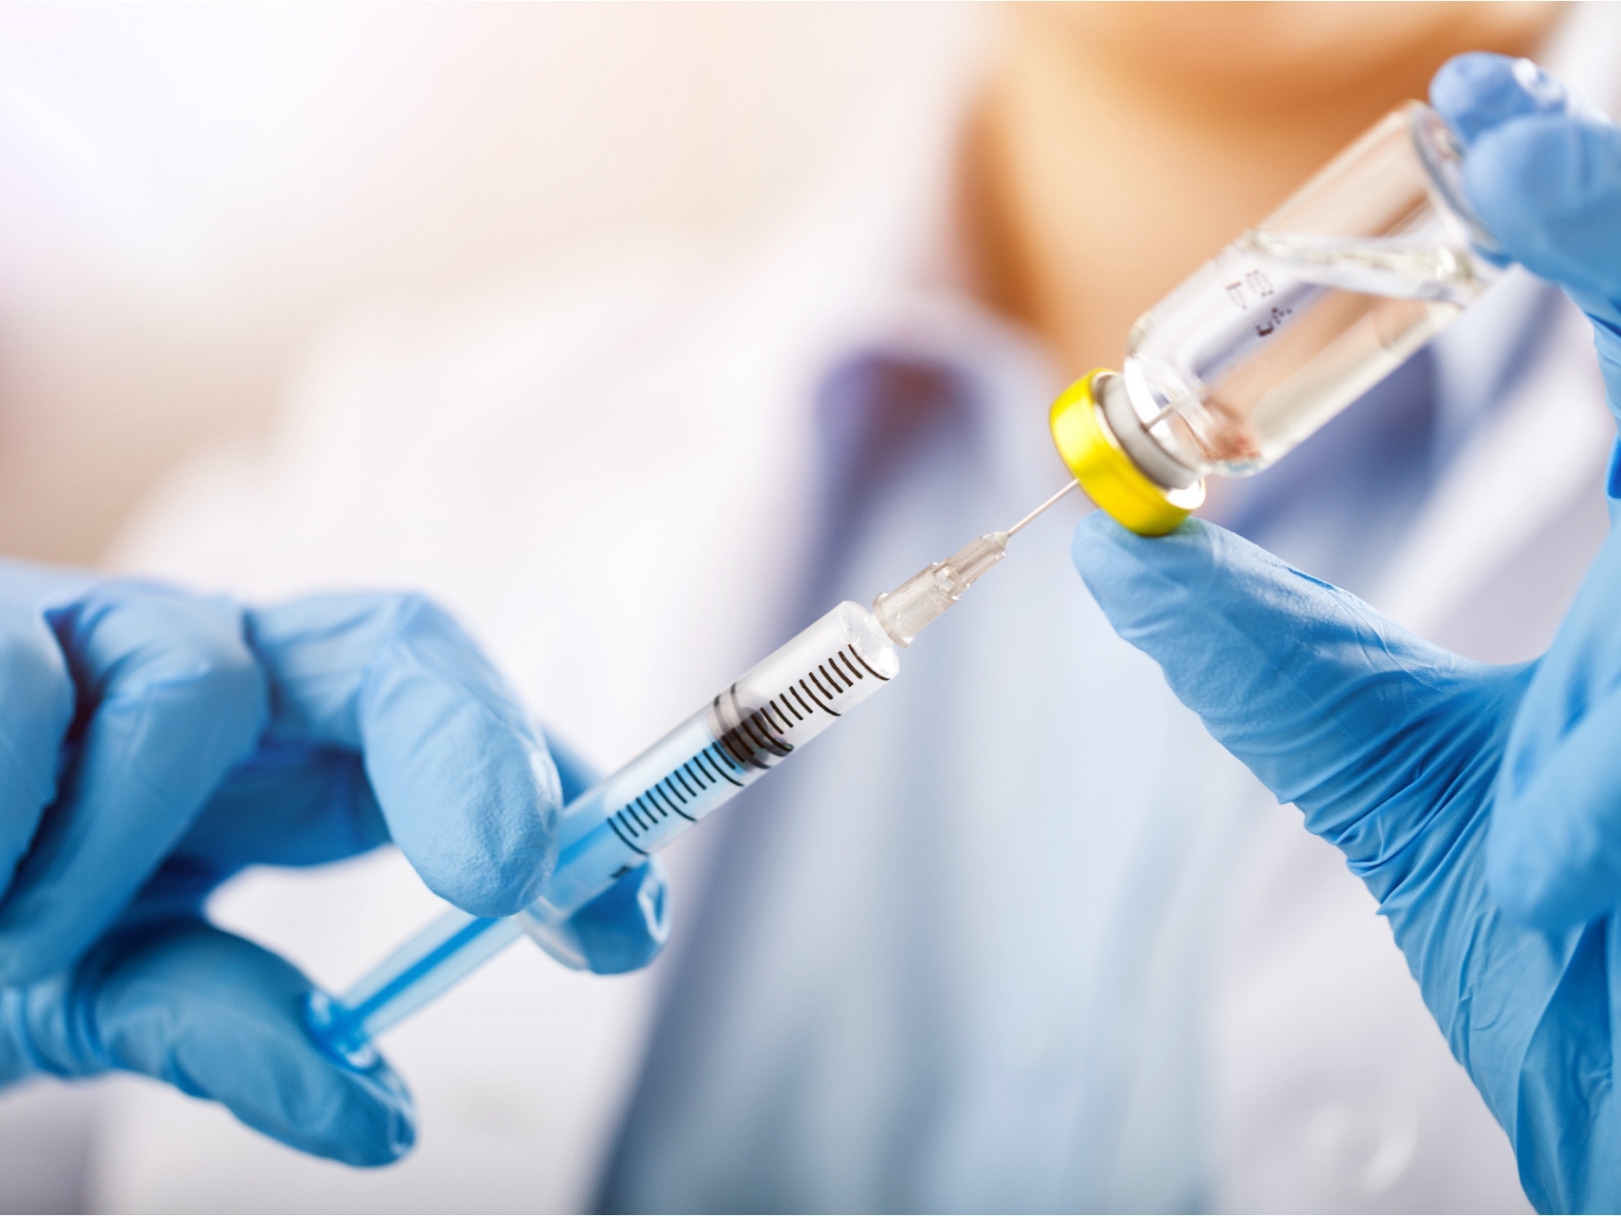 التطعيم ضد الإنفلونزا